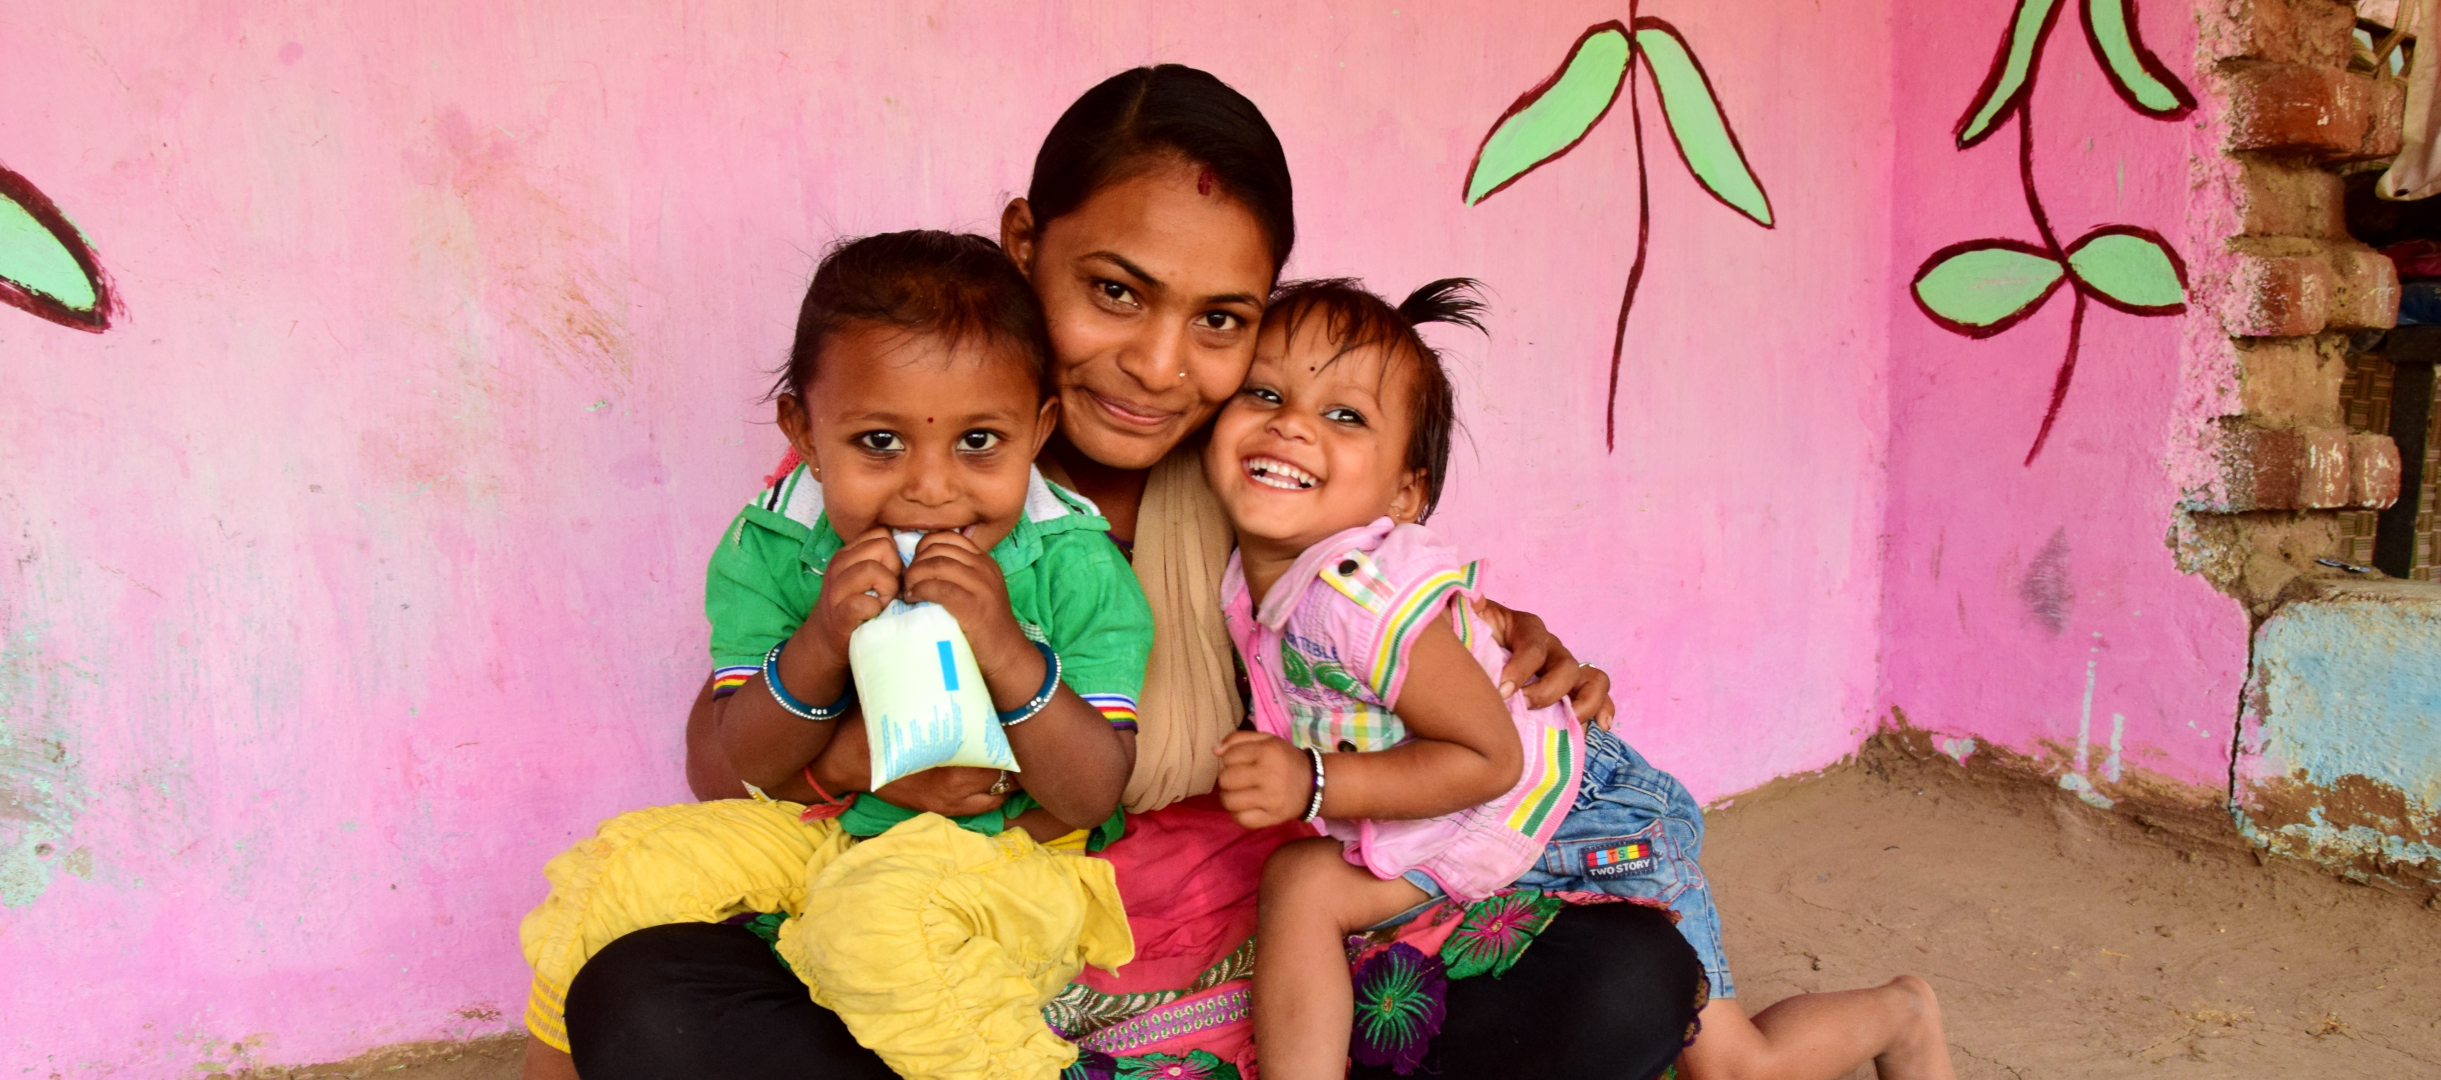 Mutter mit ihren zwei Kindern in Indien